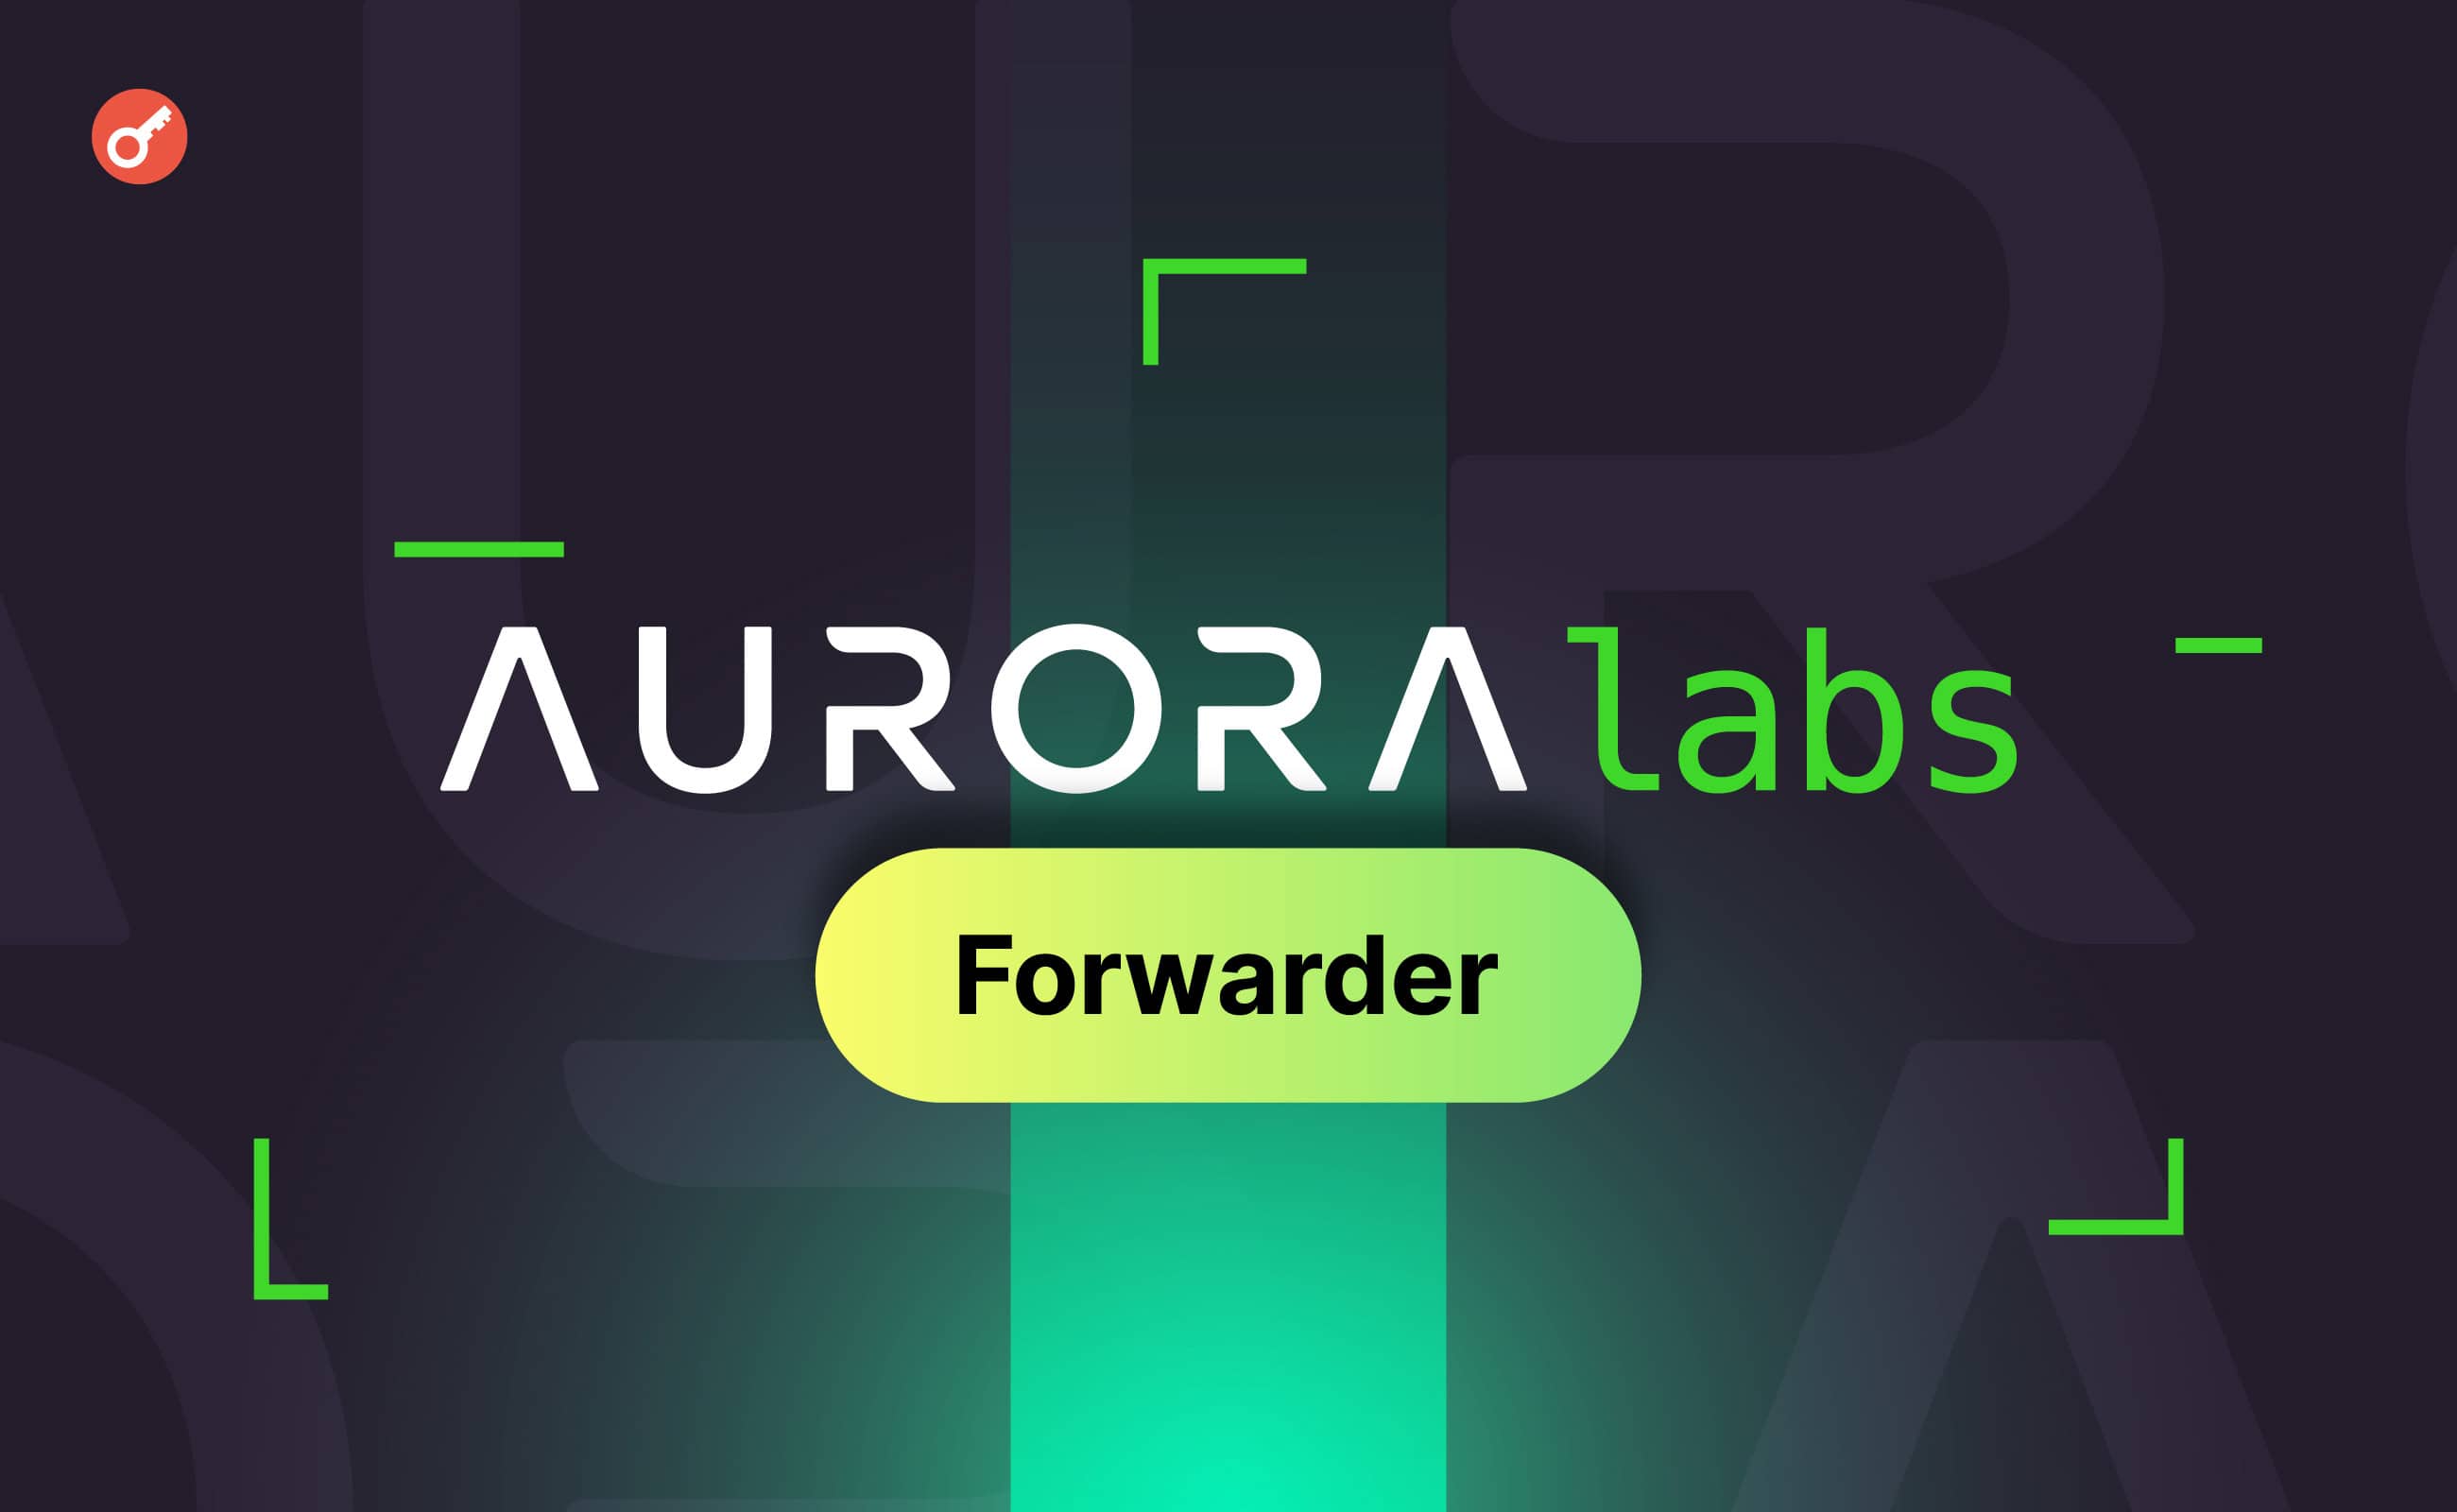 Aurora Labs запустила решение Forwarder для решения проблемы фрагментации блокчейна. Заглавный коллаж новости.